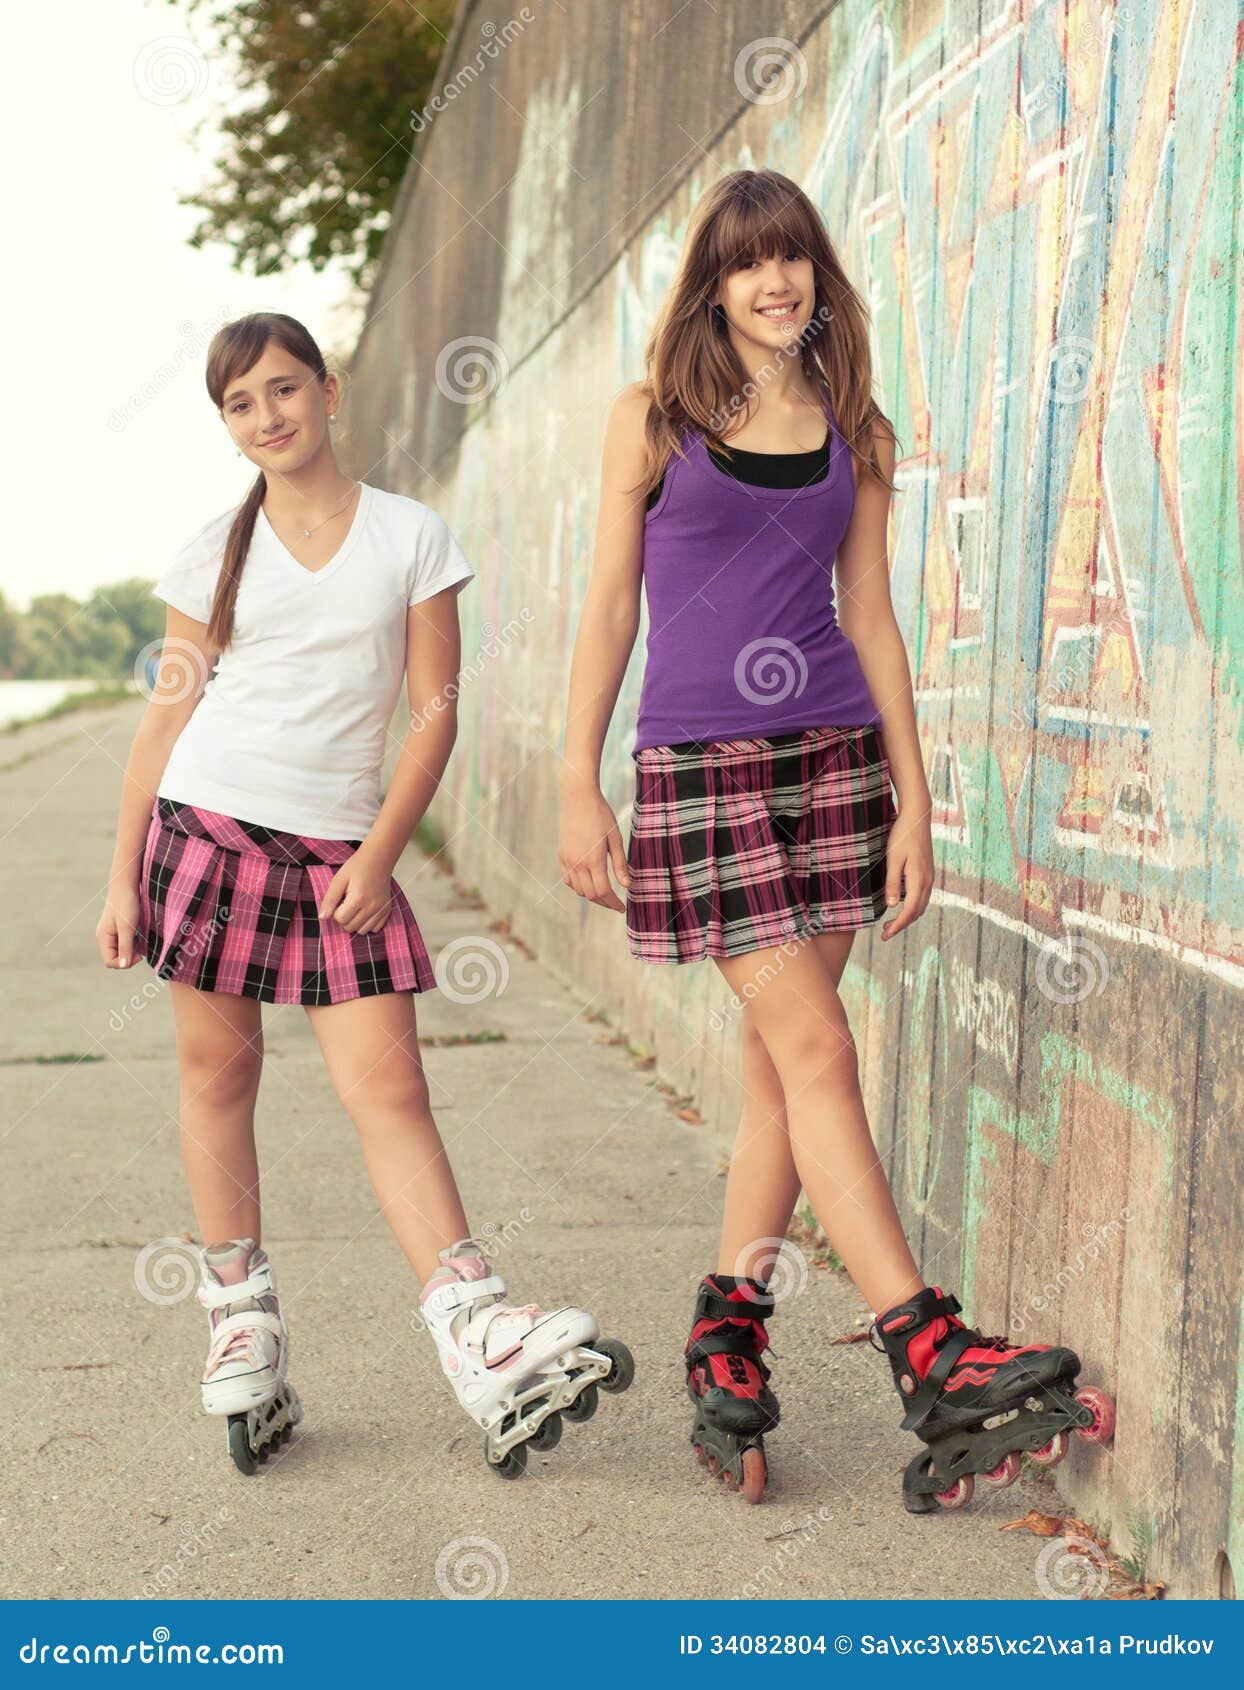 Teenage Girls On Roller Skates Having Fun Stock Photo - Image of close